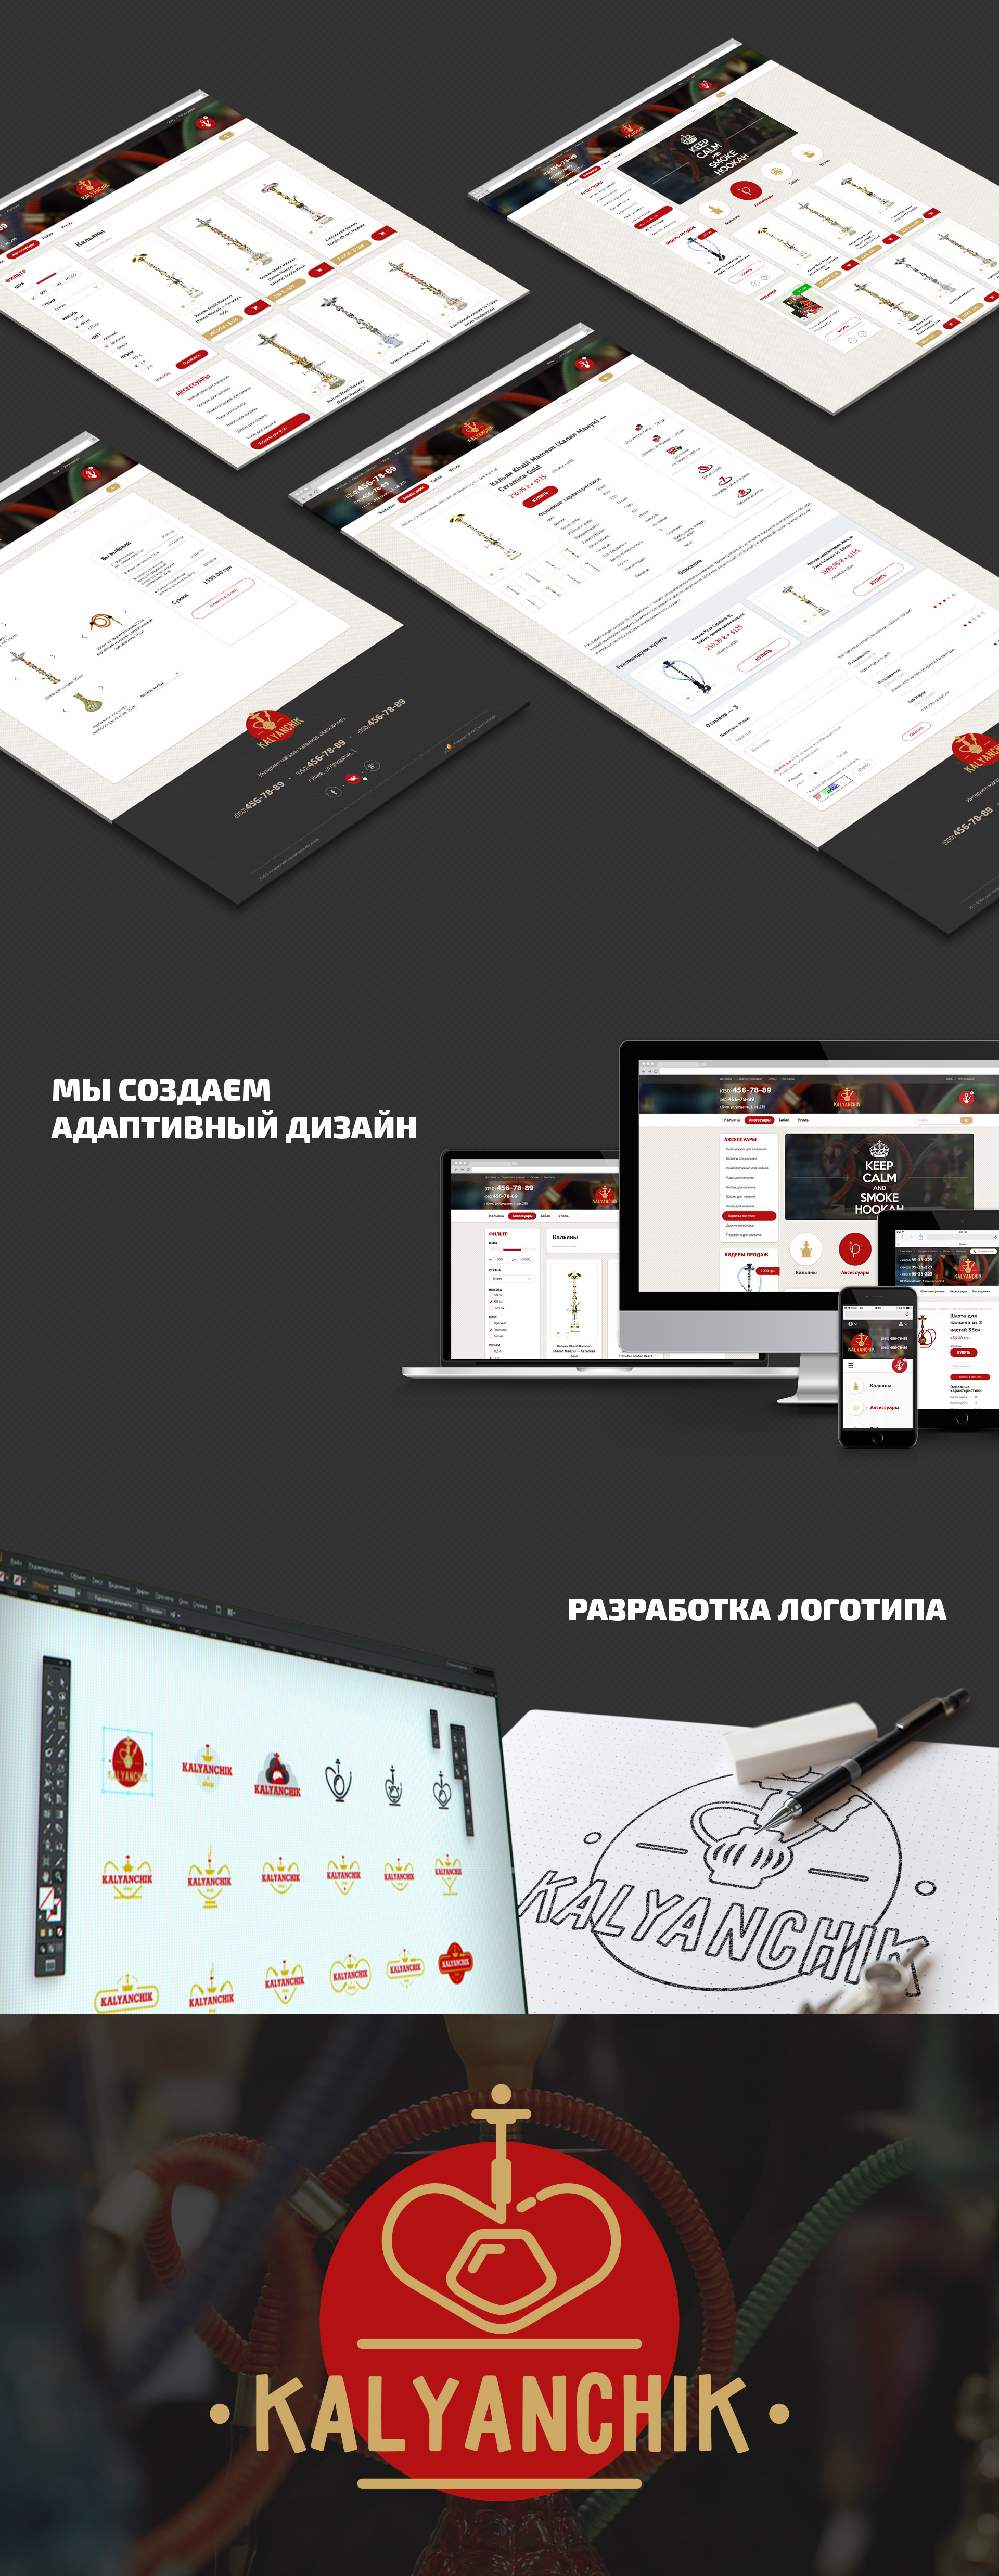 Кальянчик - дизайн сайта reclamare.ua